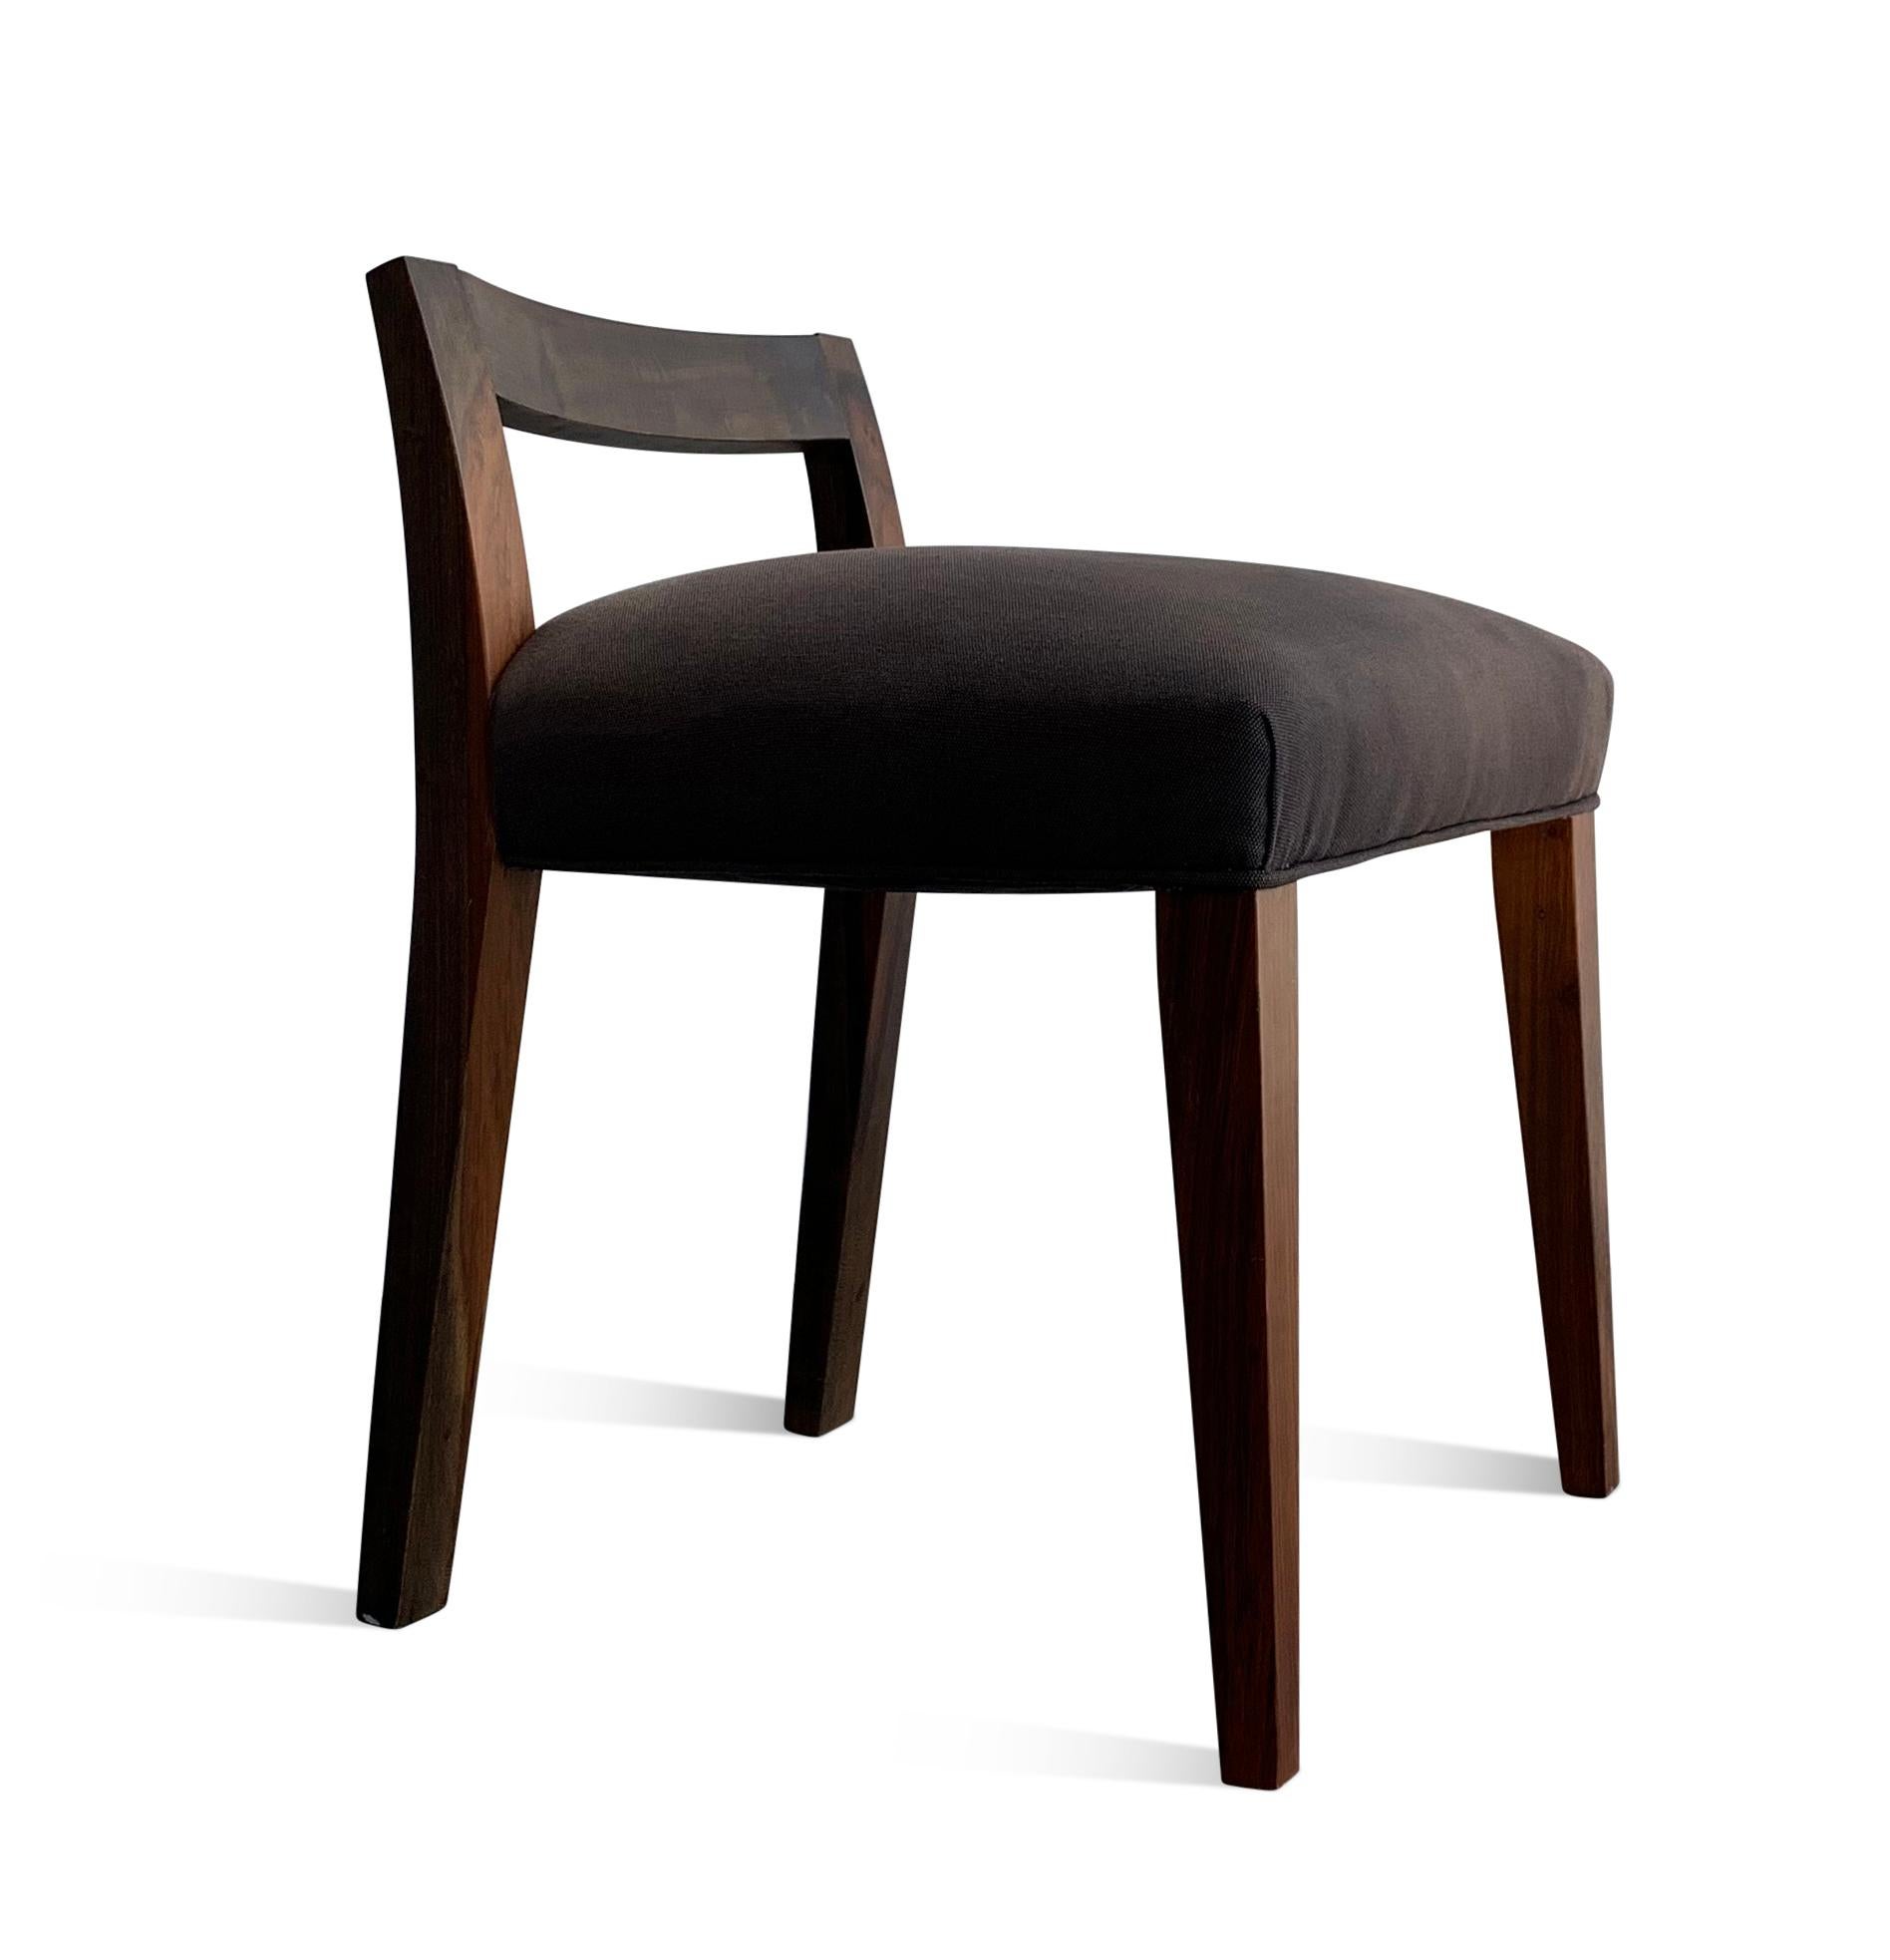 Mit einer Höhe von nur 25 Zoll bietet der Umberto-Stuhl einen eleganten und unaufdringlichen Stil. Seit seiner Einführung Mitte der 2000er Jahre ist er einer der am häufigsten nachgefragten Stühle von Costantini. Er ist in der Regel auf Lager und